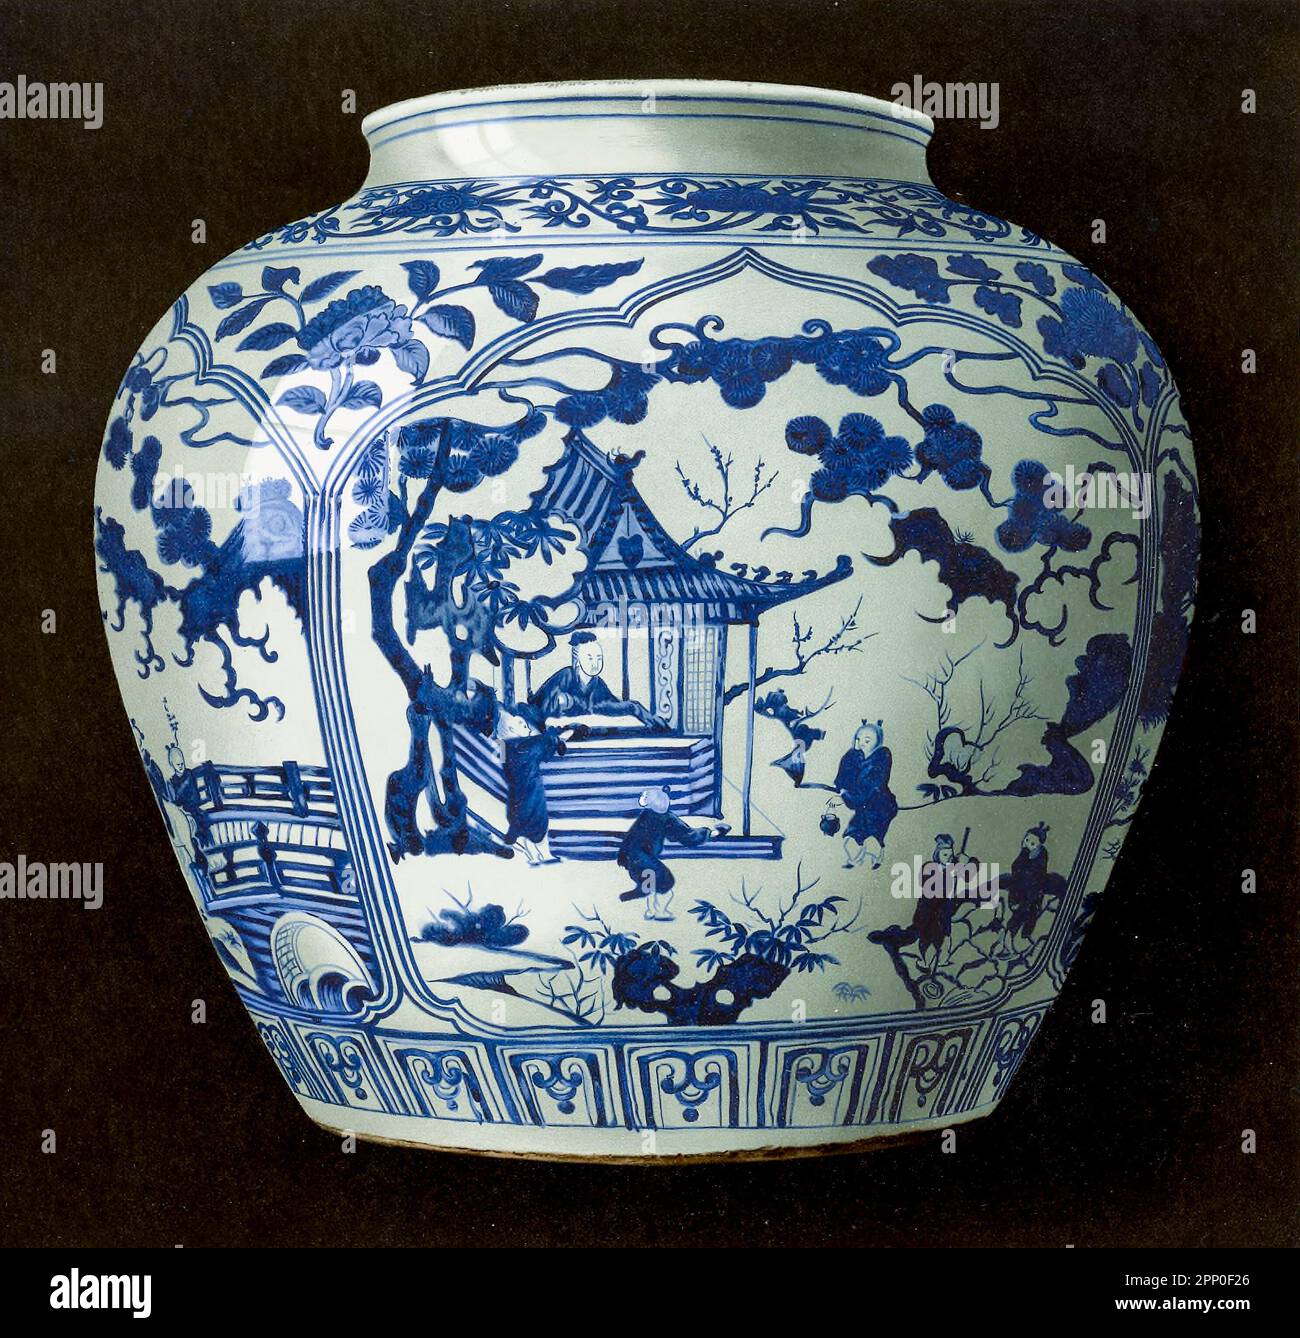 CHIA-CHING BLU E BIANCO JAR. GRANDE JAR GLOBULARE (Kang), dipinto in blu intenso e brillante, del tono di colorazione e di stile decorativo arcaico caratteristico del periodo Chia-ching della dinastia Ming. Sotto, audacemente scritto in scuro underglaze blu cobalto, è il marchio Ta Ming Chia ching (1522-66) nien chih “realizzato nel regno di Chia-ching, della Grande dinastia Ming dal libro ' ORIENTAL CERAMICA ART COLLECTION OF William Thompson Walters ' pubblicato nel 1897 Foto Stock